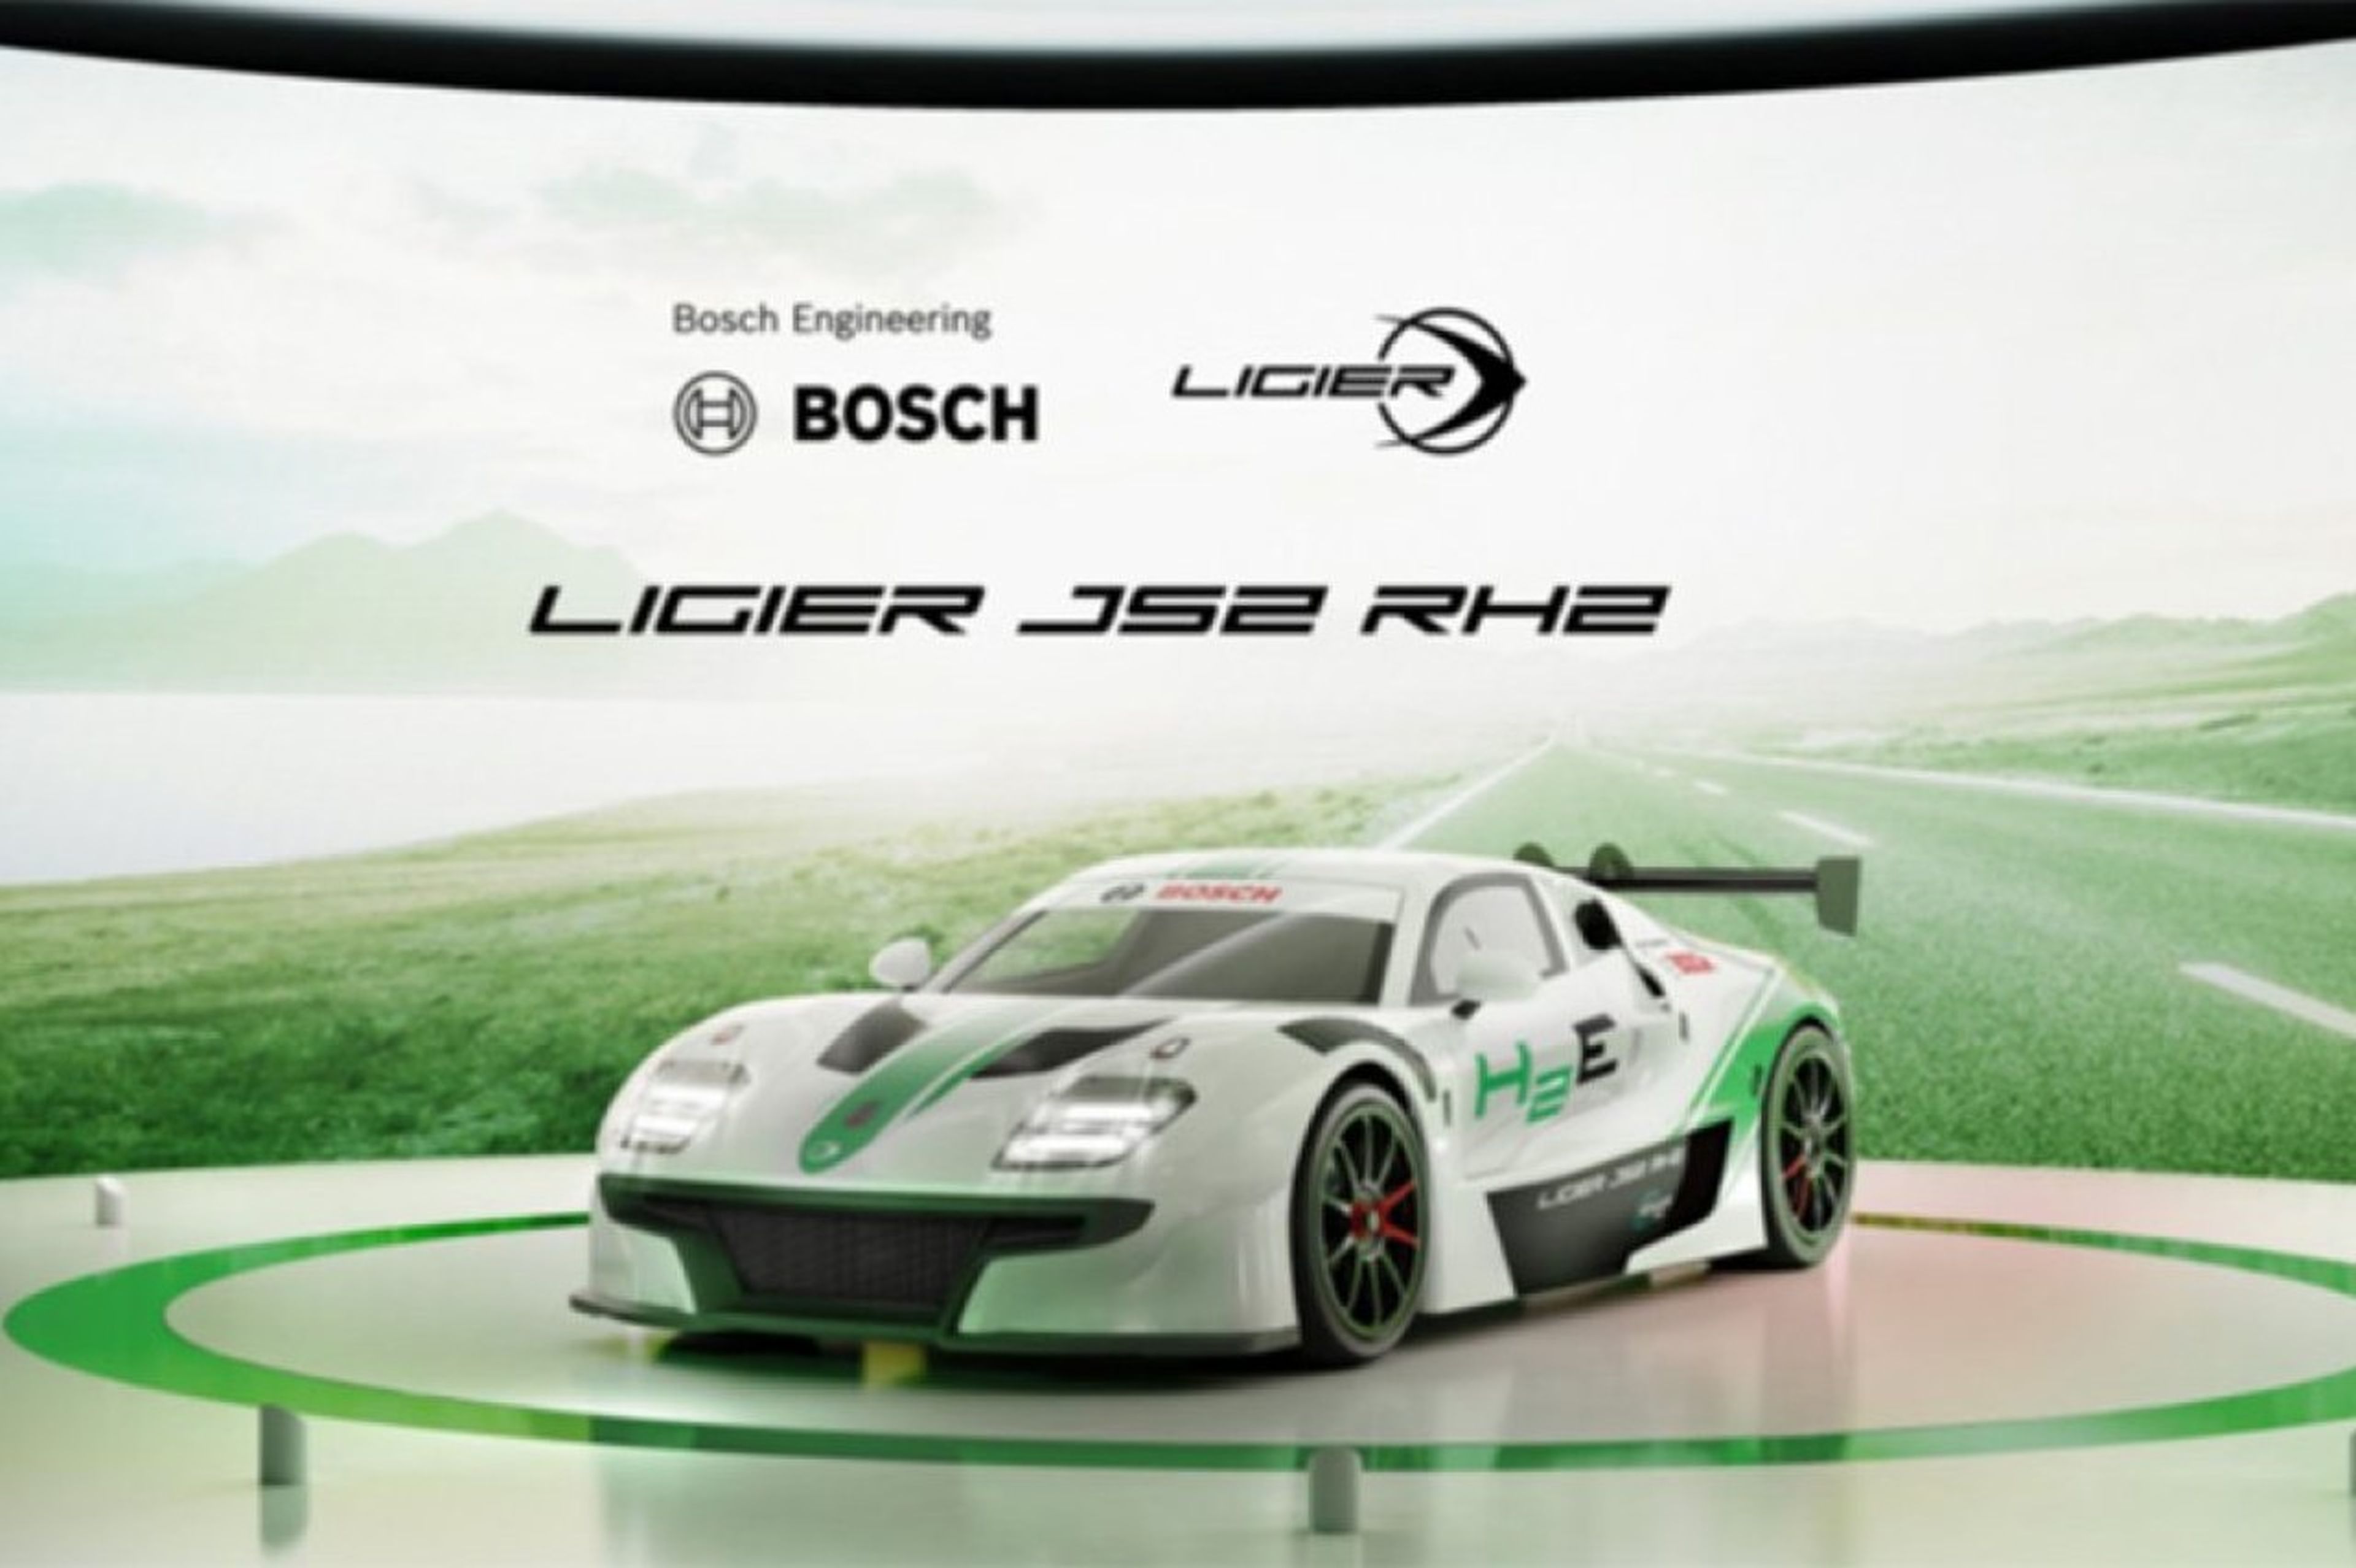 Ligier JS2 RH2 